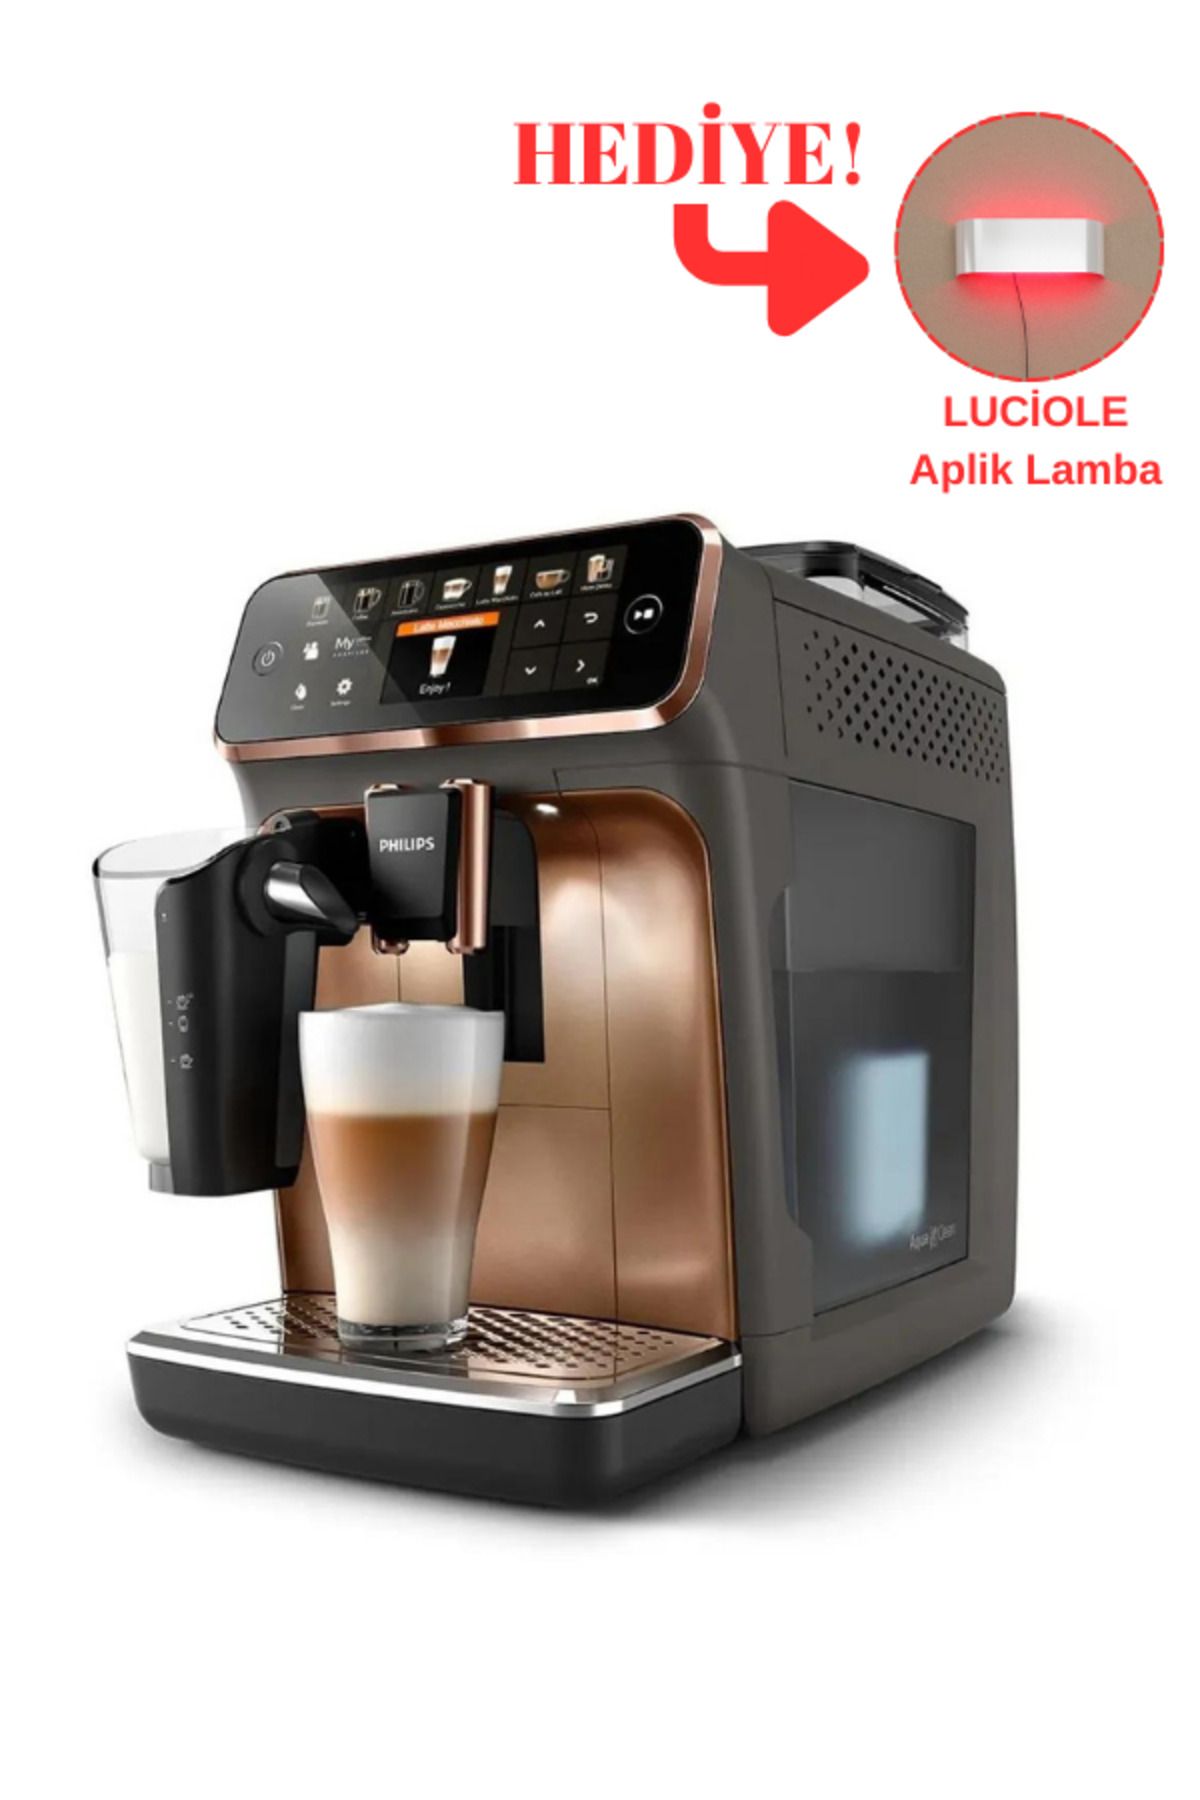 Philips Lattego Seri 12 Farklı Içecek, Tam Otomatik Kahve Ve Espresso Makinesi - Luciole Lambader Hediye!